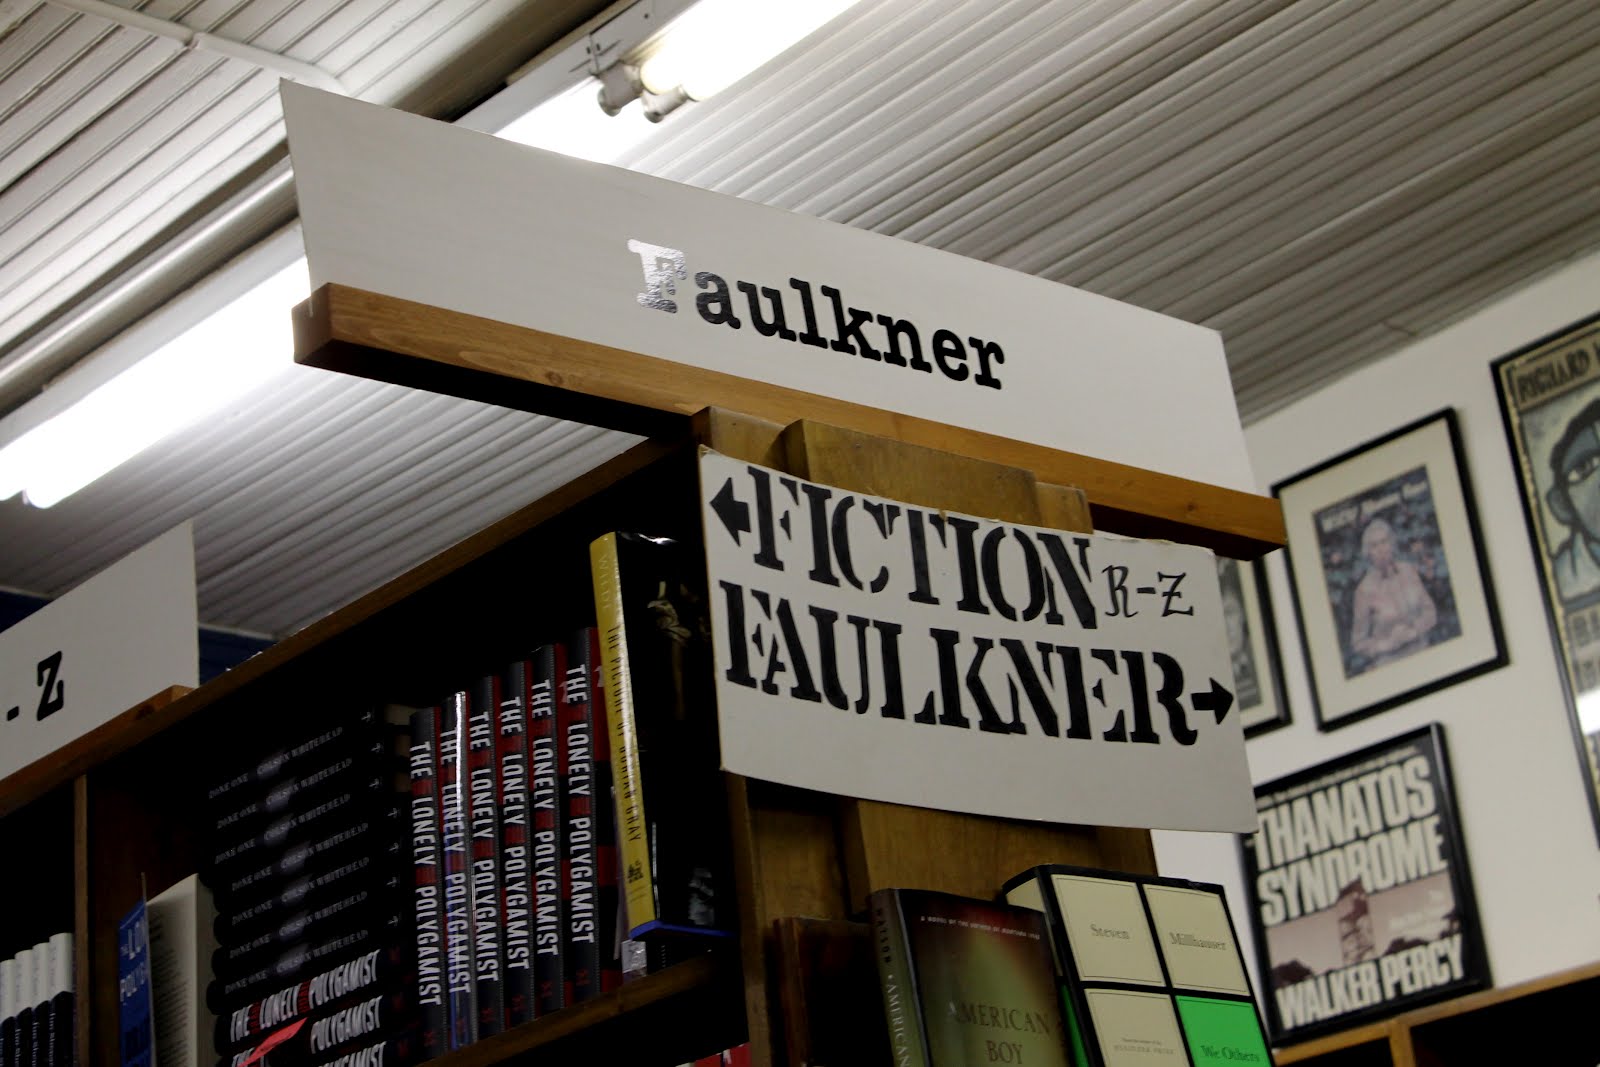 Faulkner Fiction.jpg